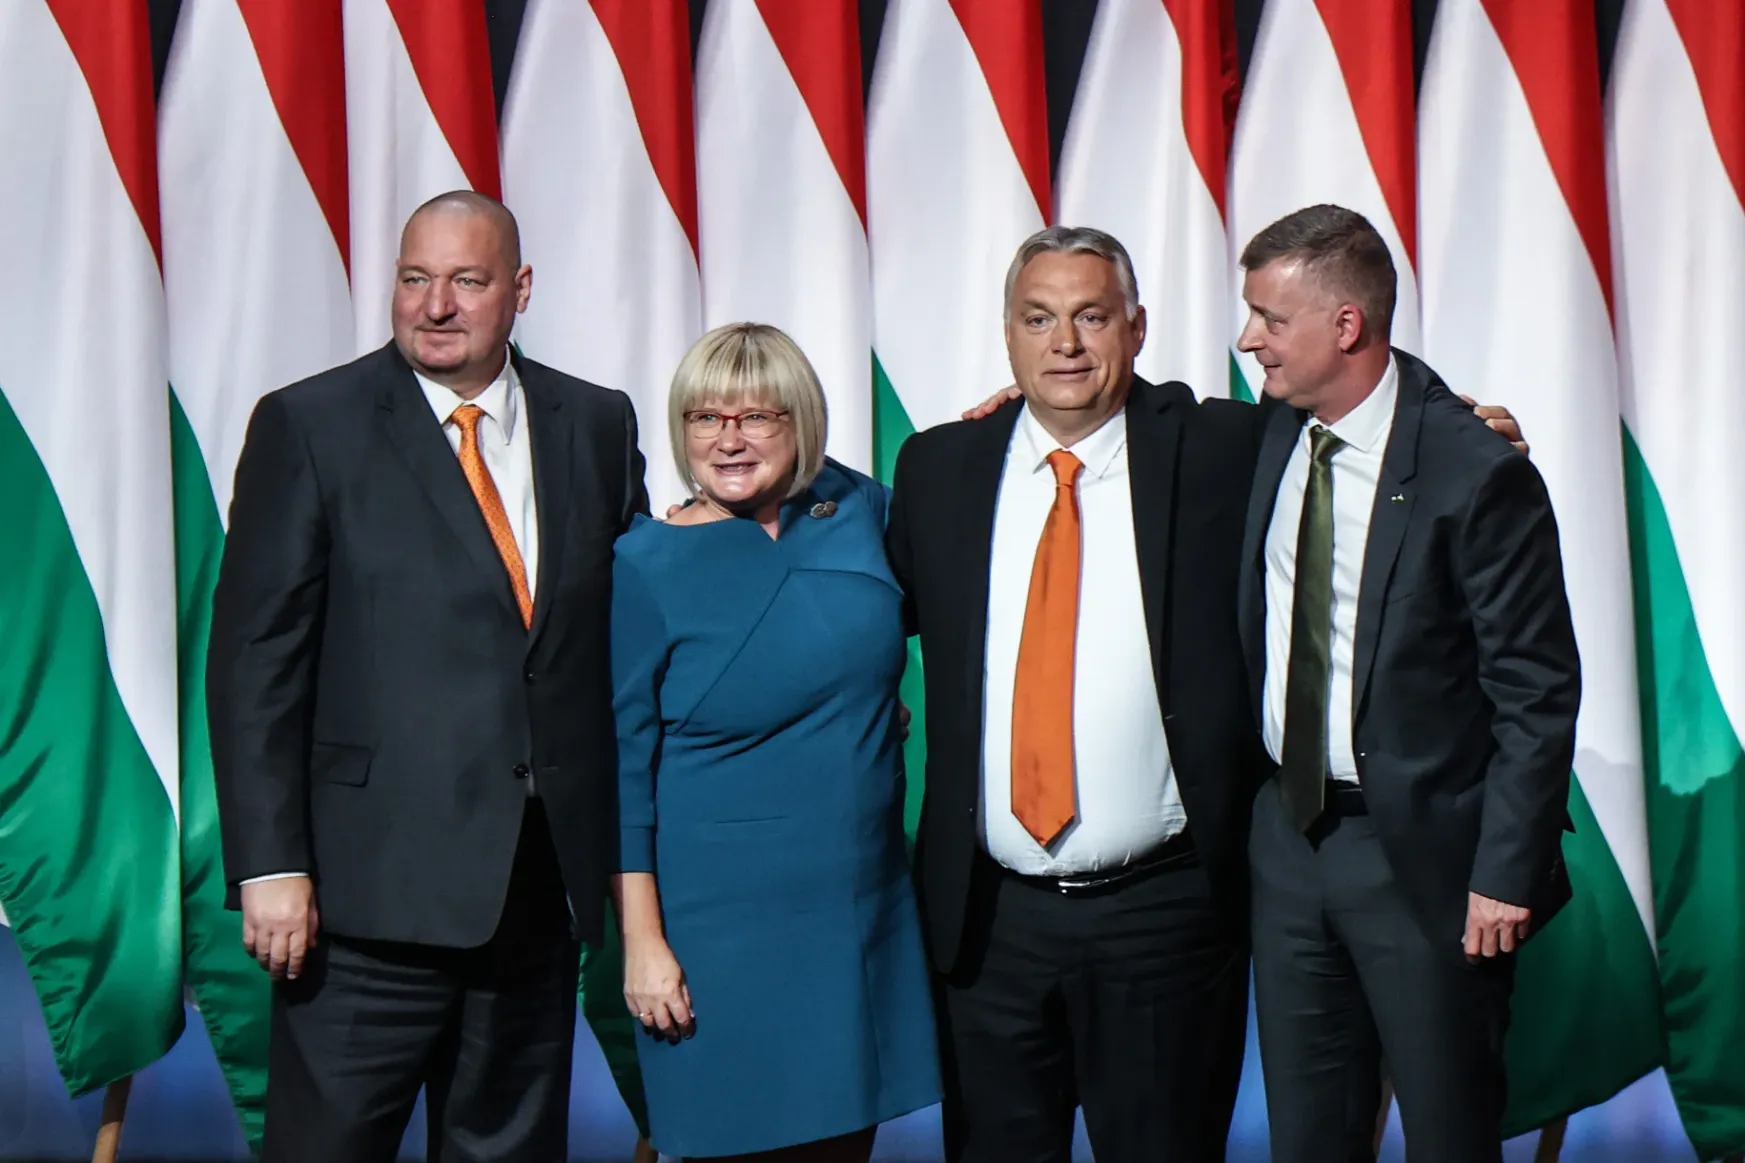 November 18-án tartják a Fidesz tisztújító kongresszusát